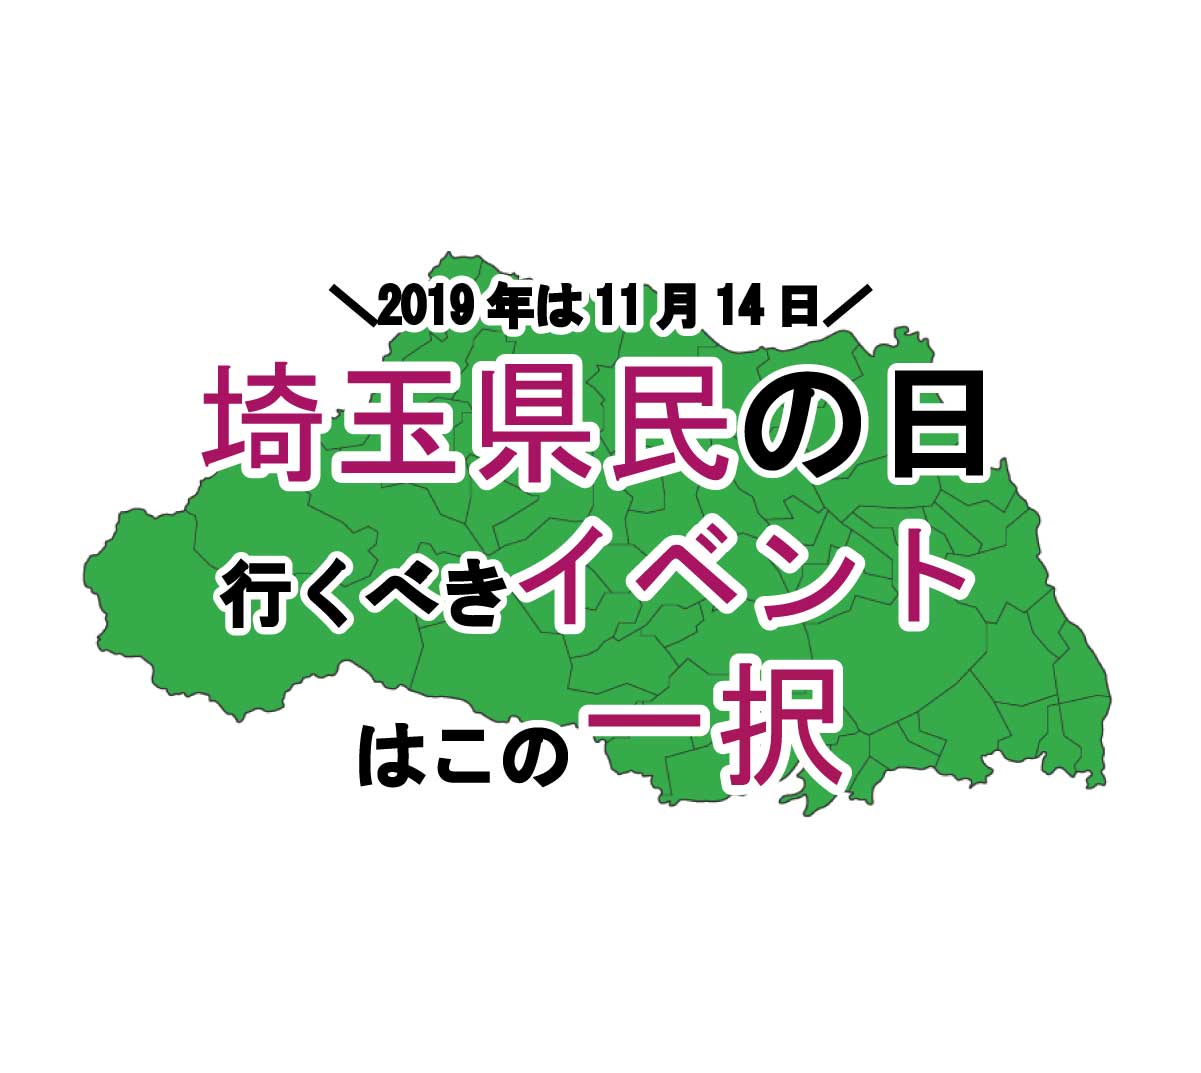 2019年11月14日は「埼玉県民の日」、注目すべきイベントはこの1つ！